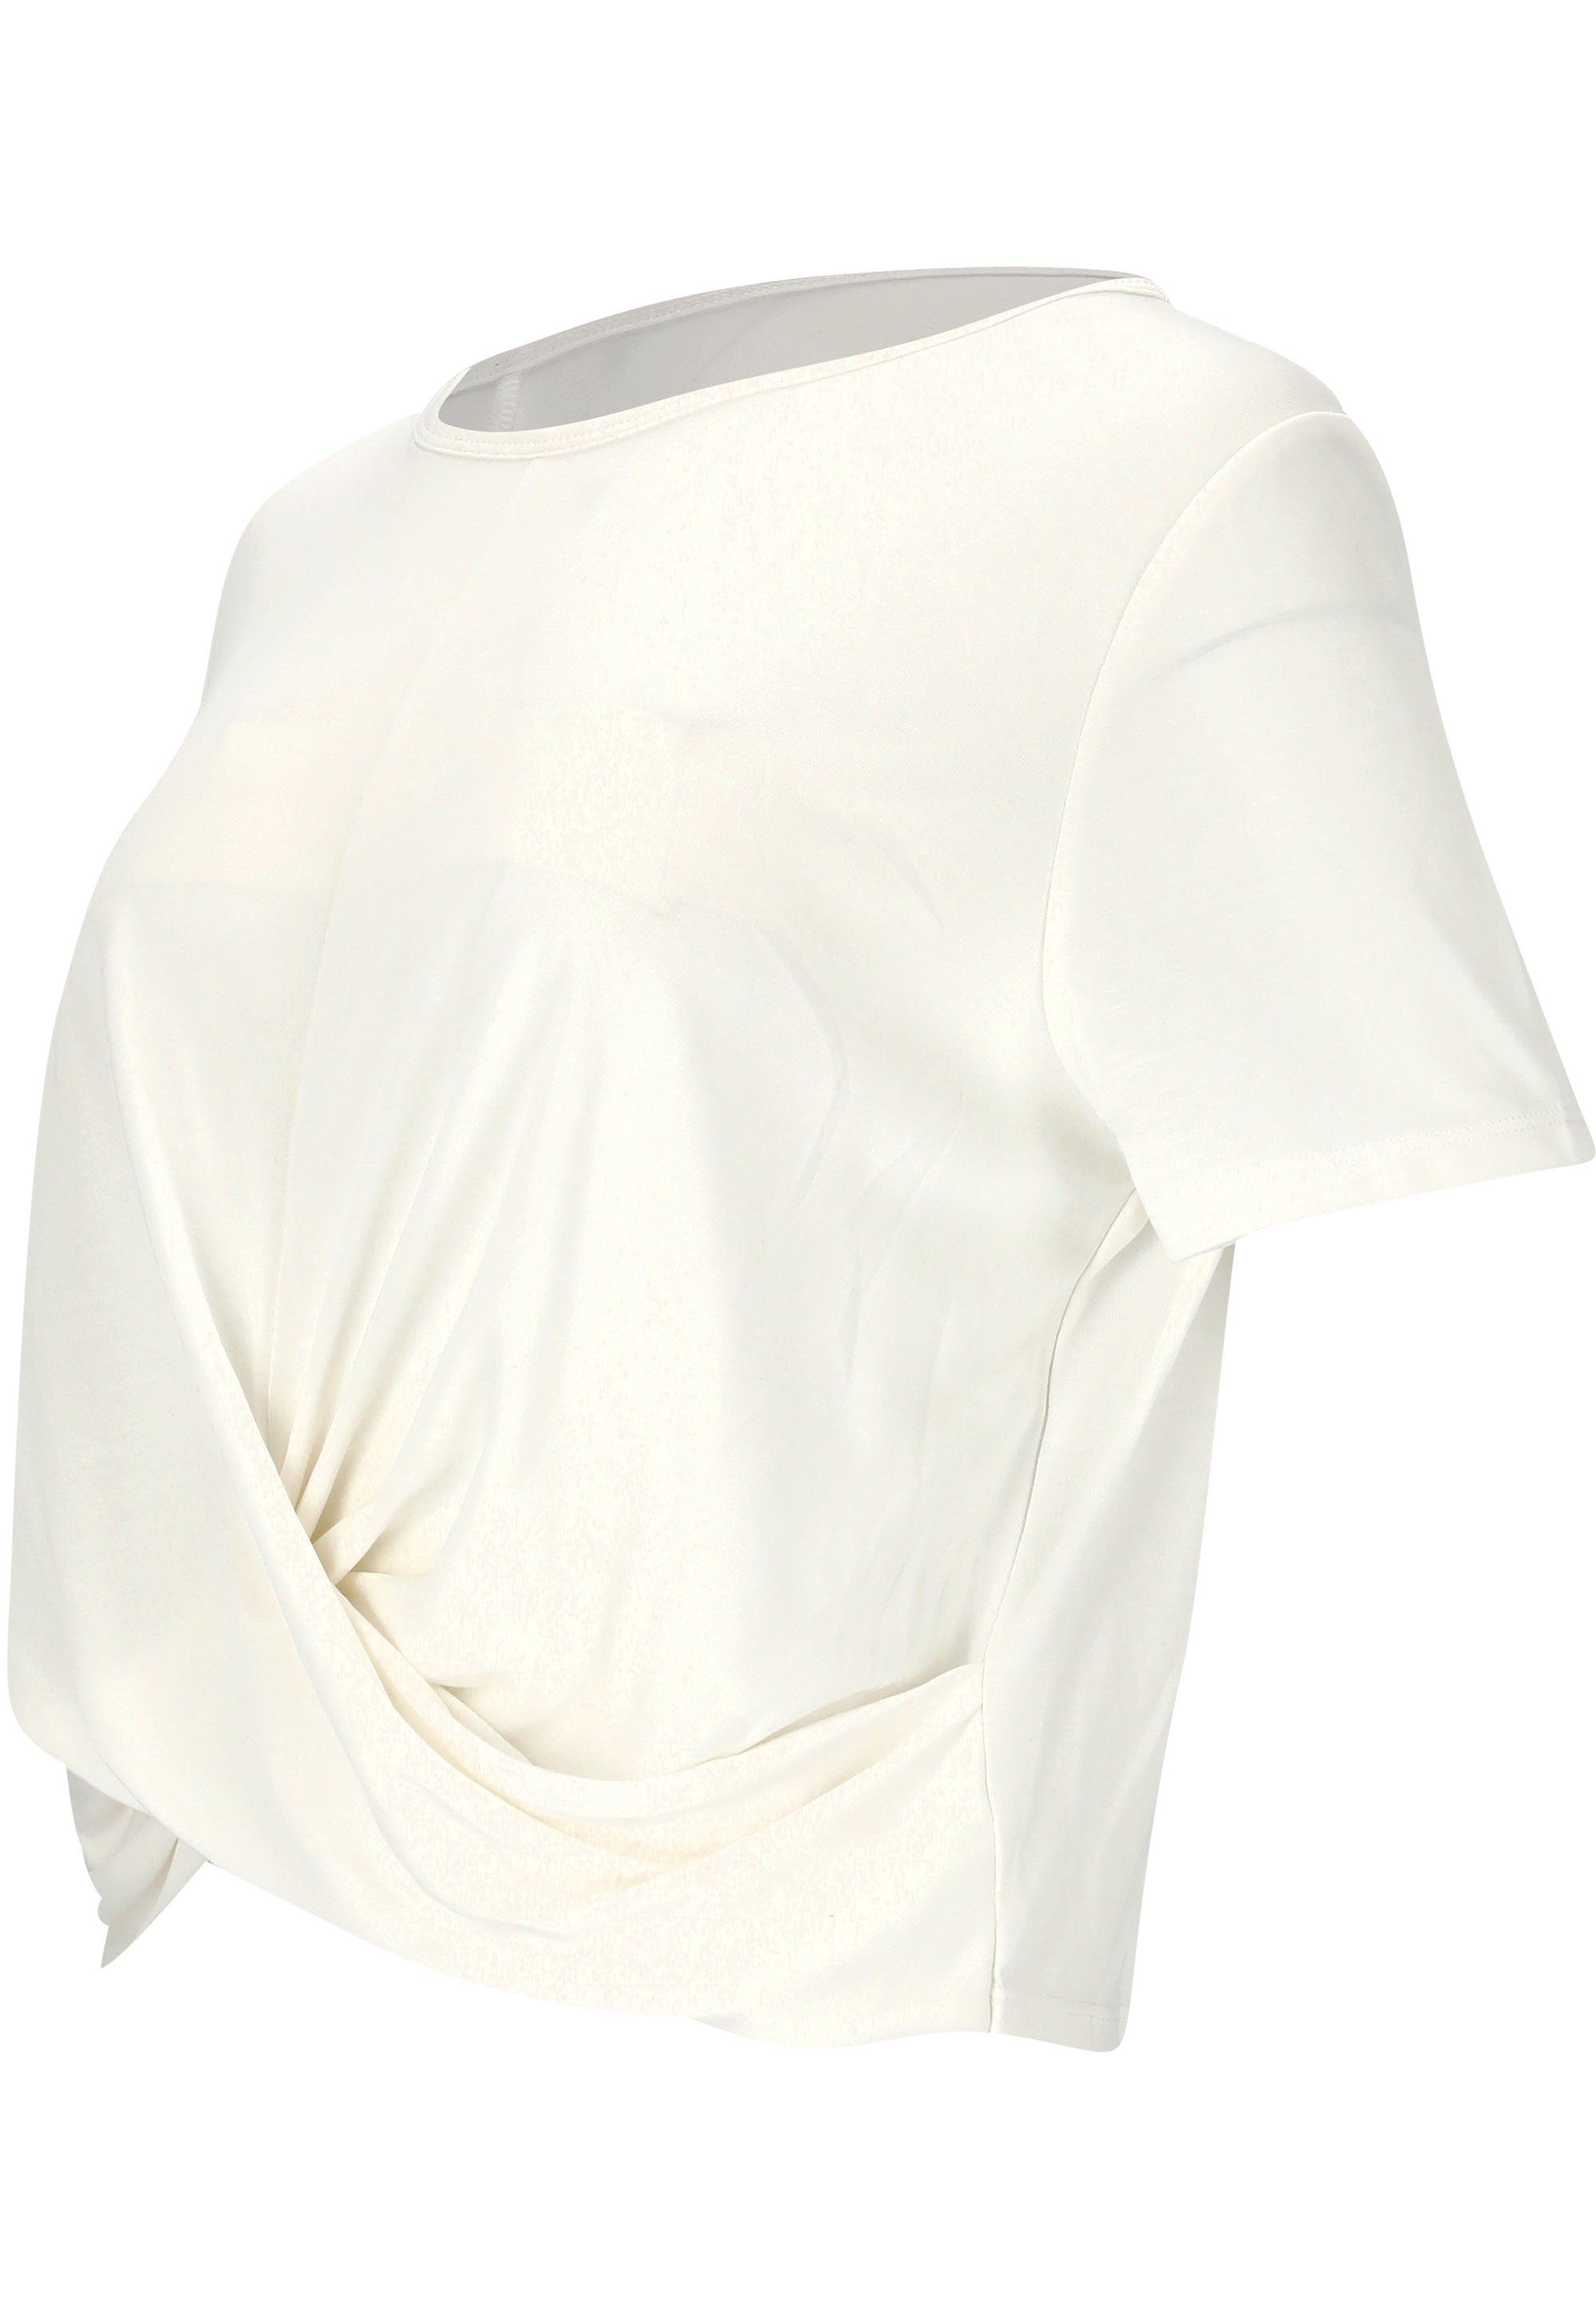 Diamy mit weiß-weiß ATHLECIA Funktionsshirt (1-tlg) Quick-Dry-Technologie